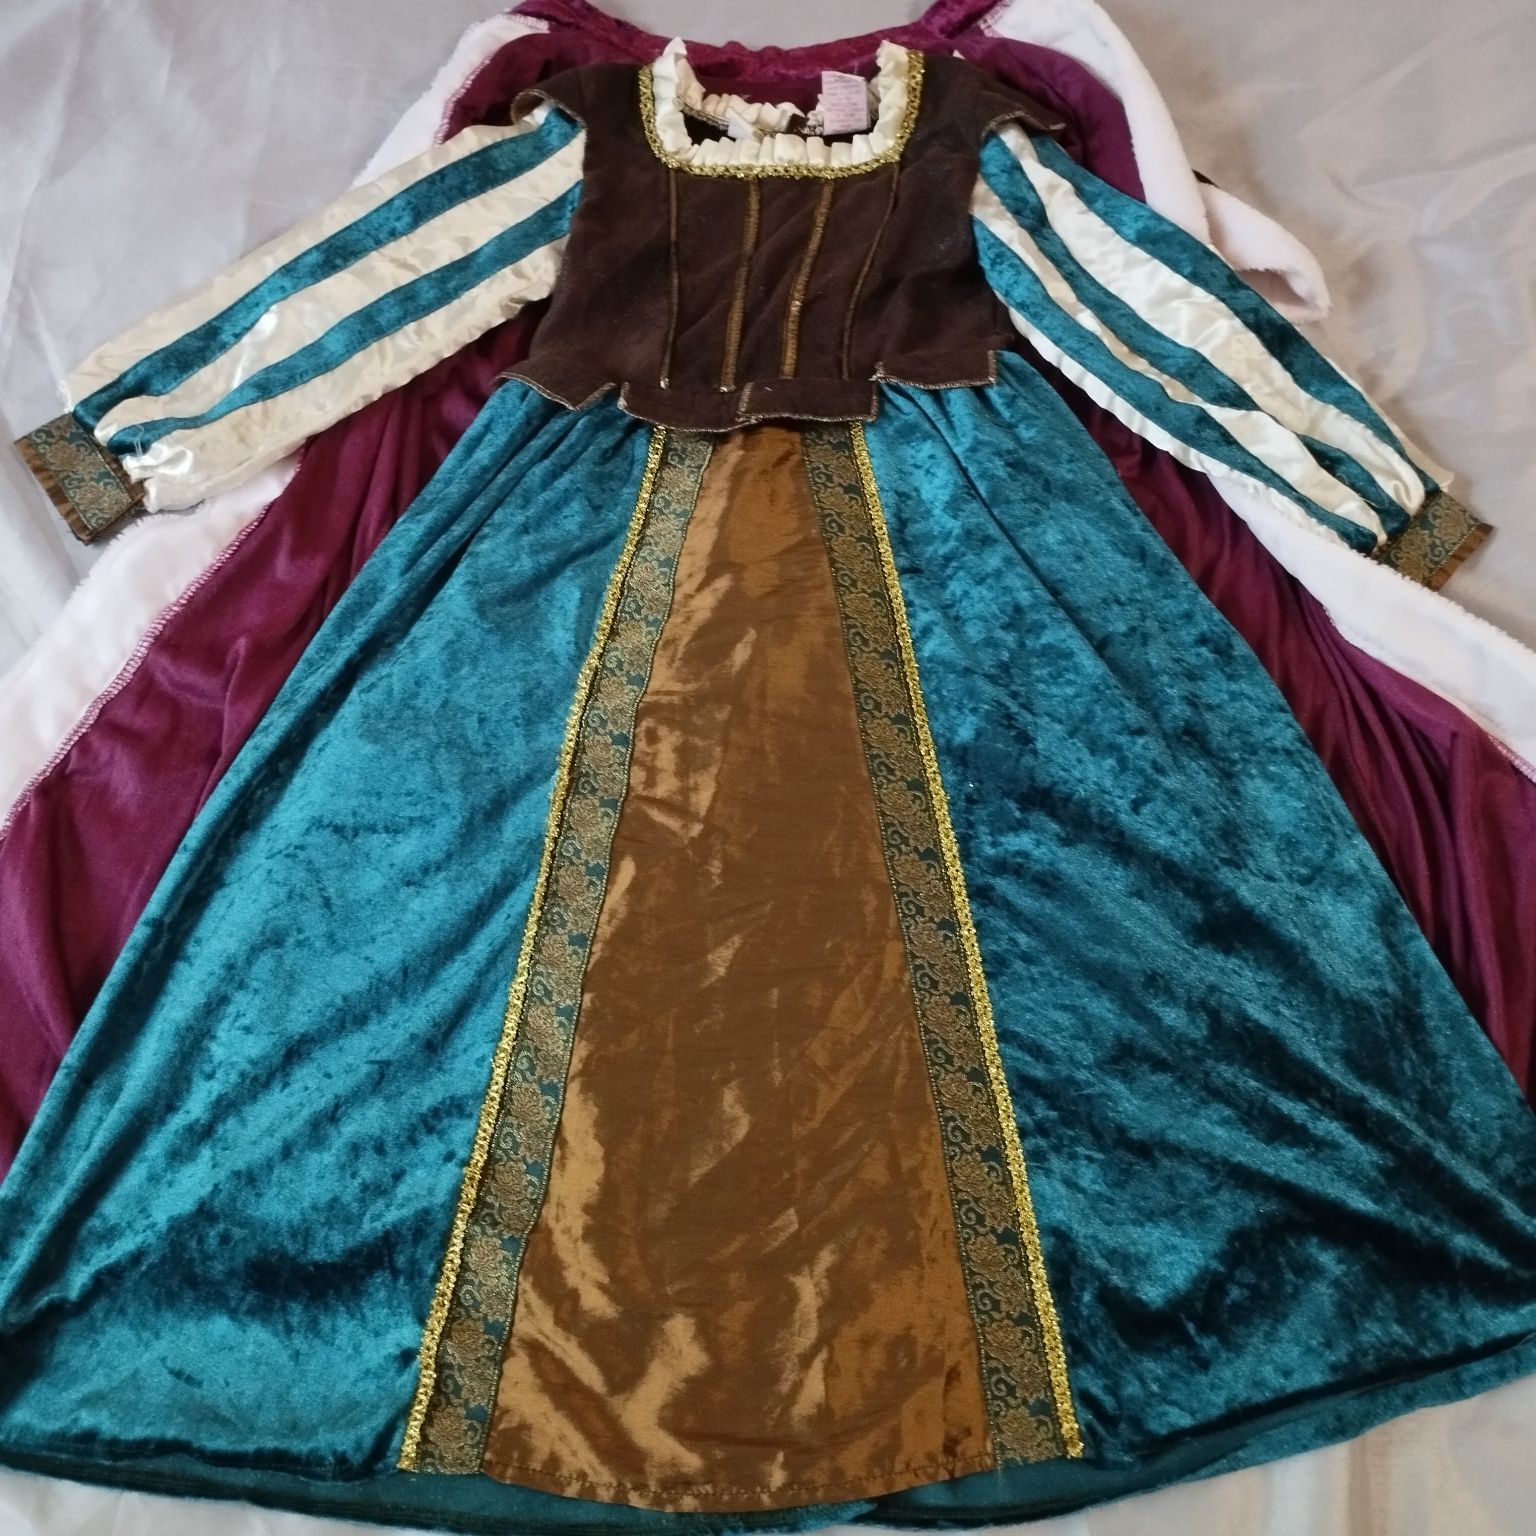 платье королева средневековье ренессанс наряд принцесса